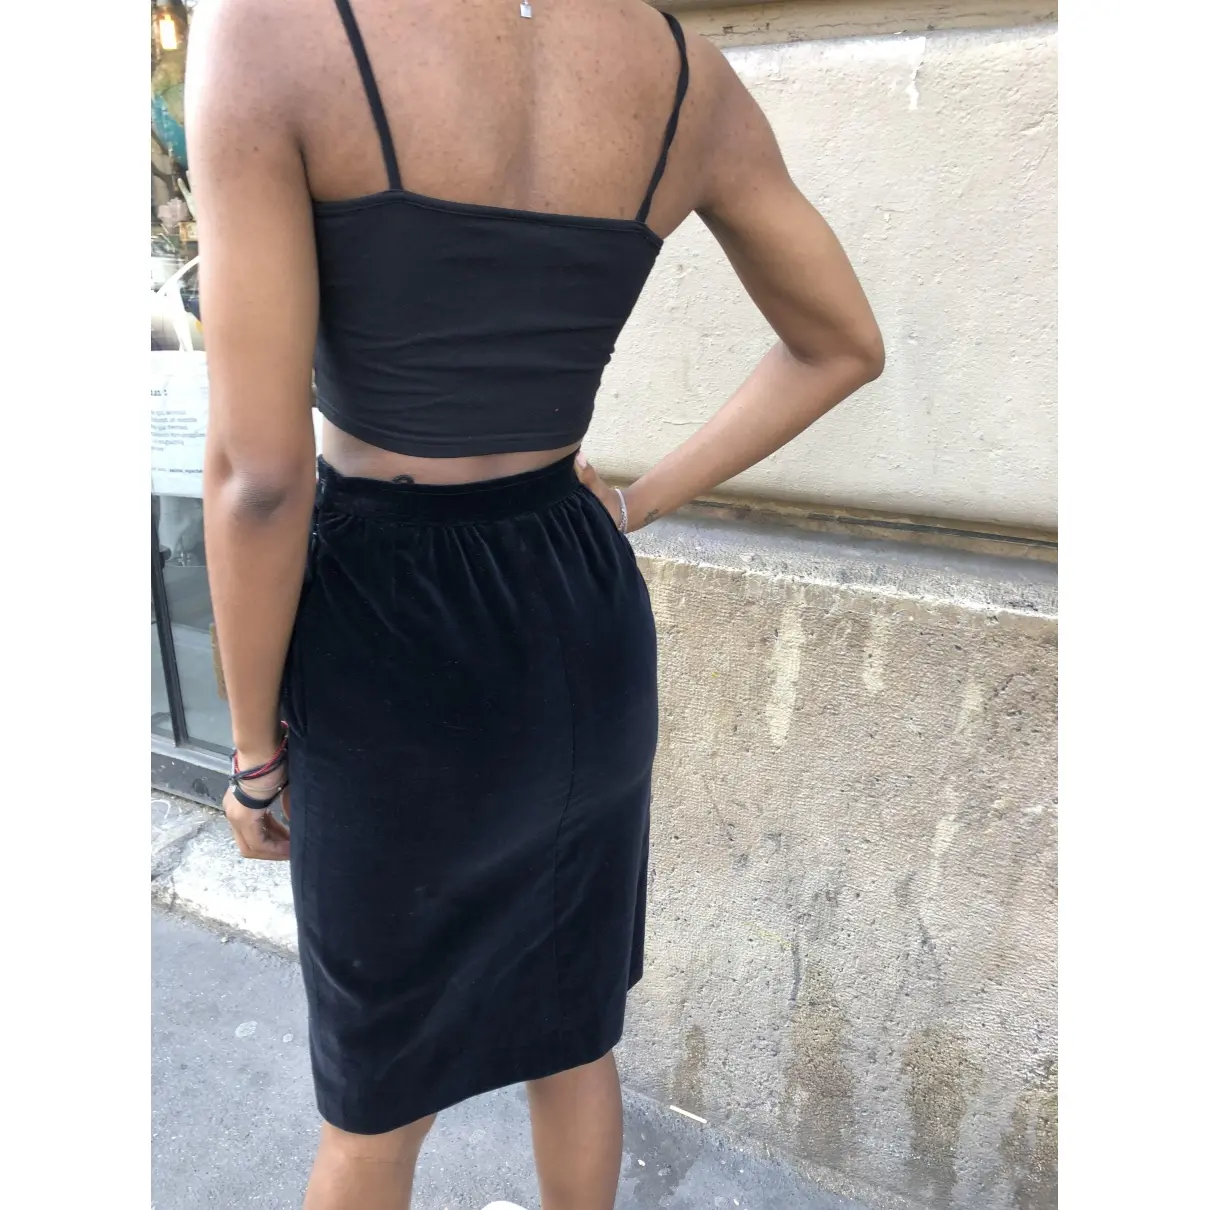 Velvet mid-length skirt Yves Saint Laurent - Vintage